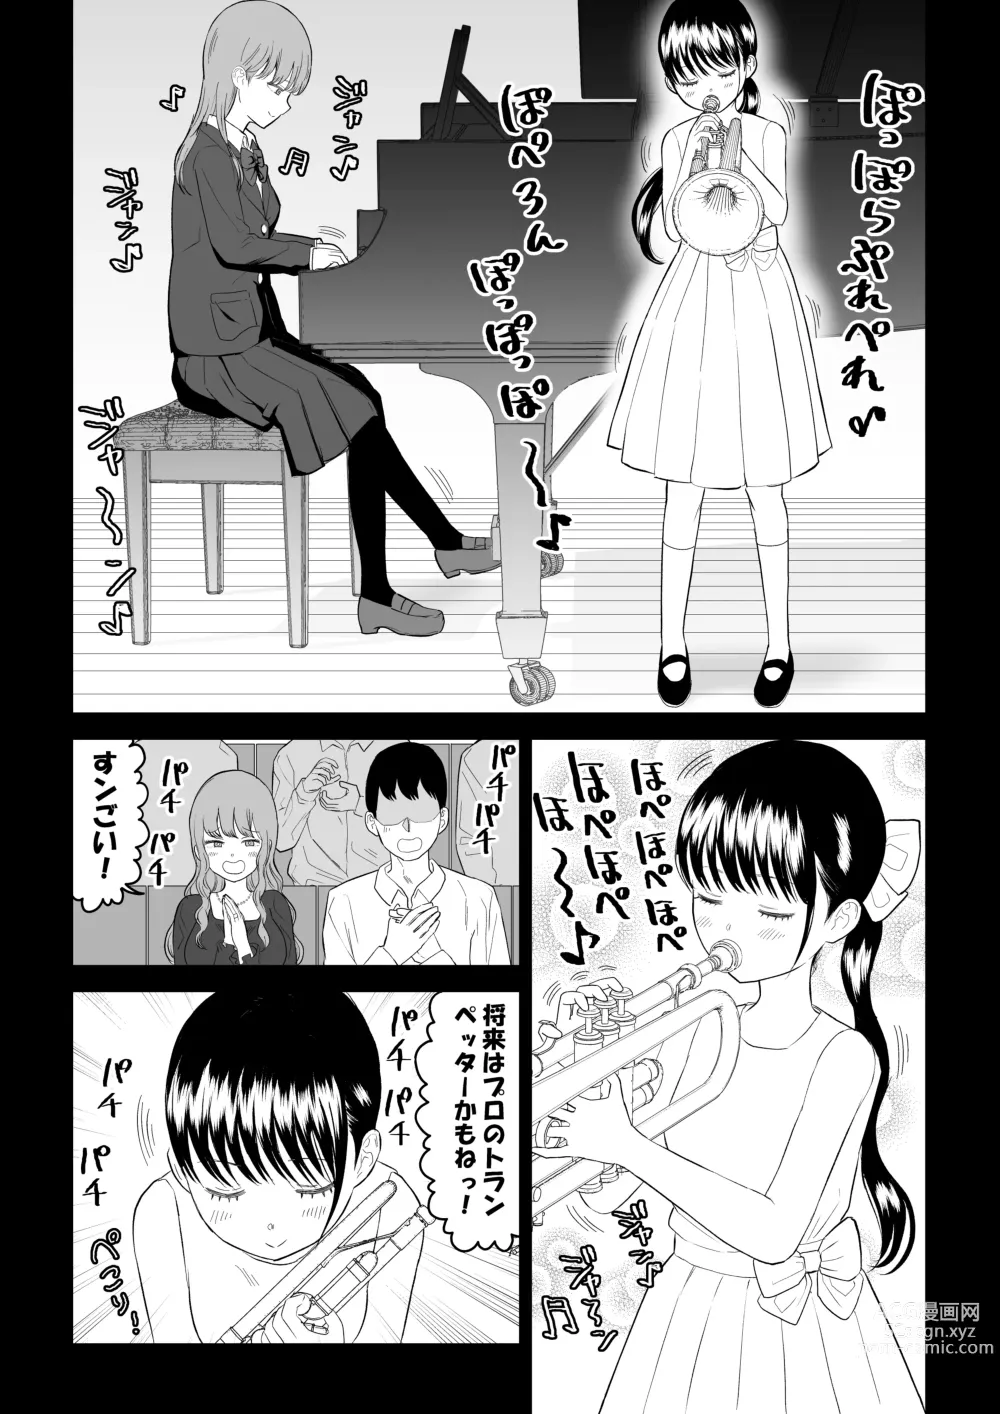 Page 21 of doujinshi Cool-Dere JK 3 Shitsurakuen Hen